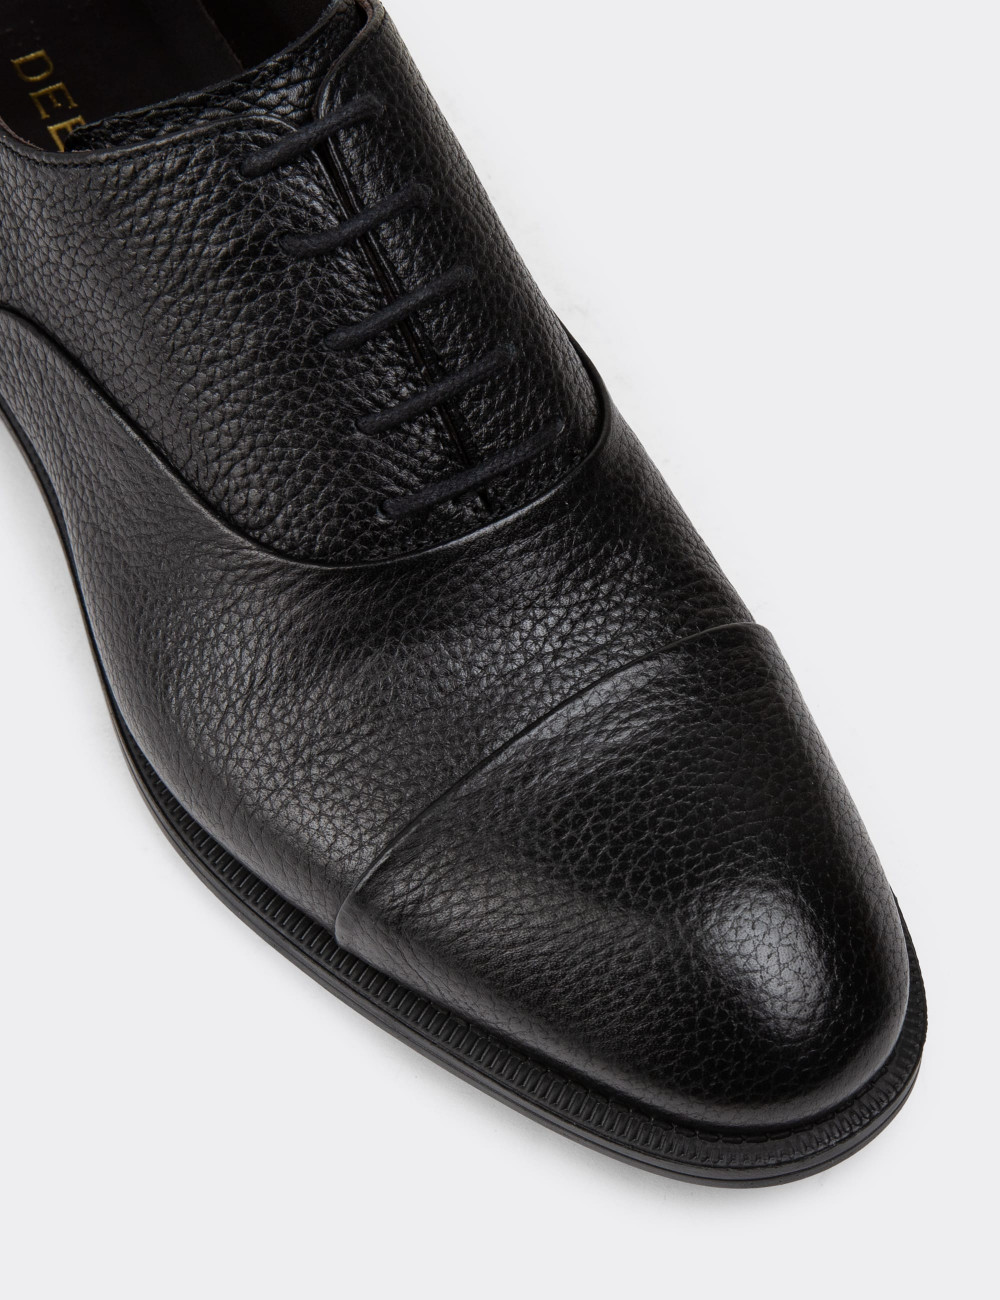 Hakiki Deri Siyah Erkek Klasik Ayakkabı - 01026MSYHC08